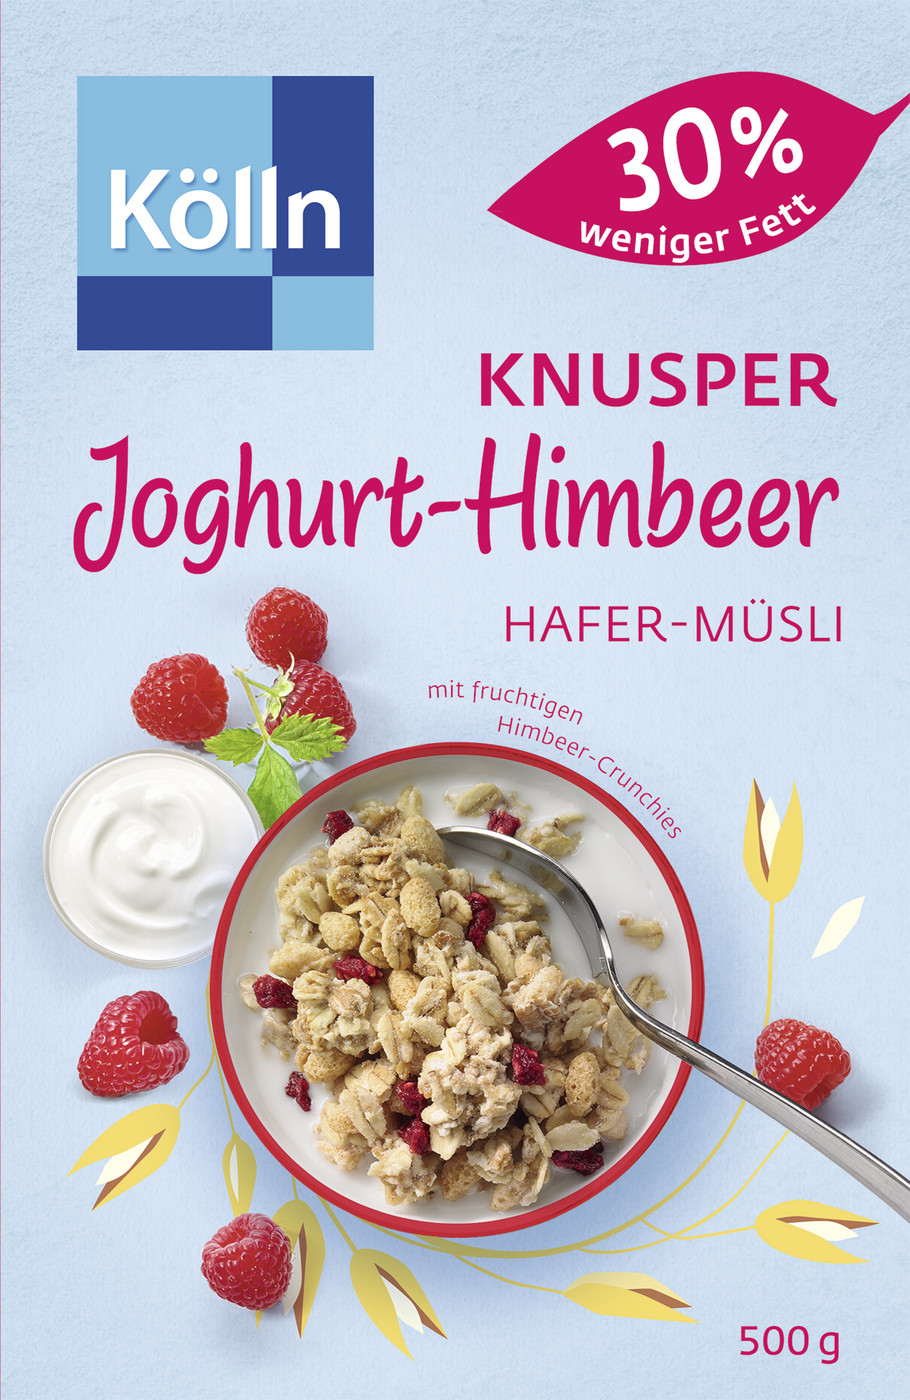 Kölln Müsli Knusper Joghurt Himbeer 30% weniger Fett 500G